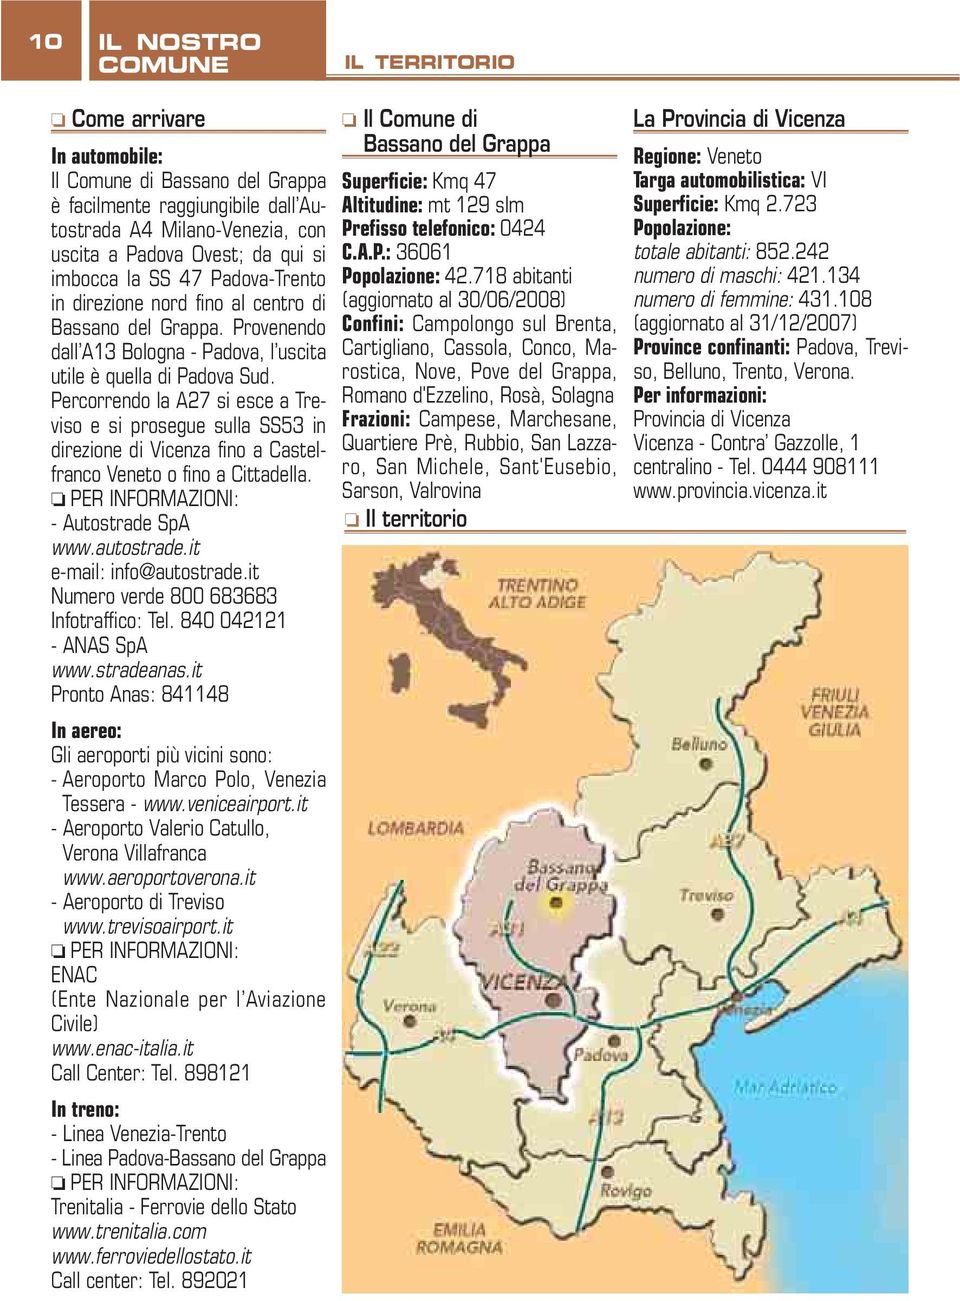 Percorrendo la A27 si esce a Treviso e si prosegue sulla SS53 in direzione di Vicenza fino a Castelfranco Veneto o fino a Cittadella. PER INFORMAZIONI: - Autostrade SpA www.autostrade.